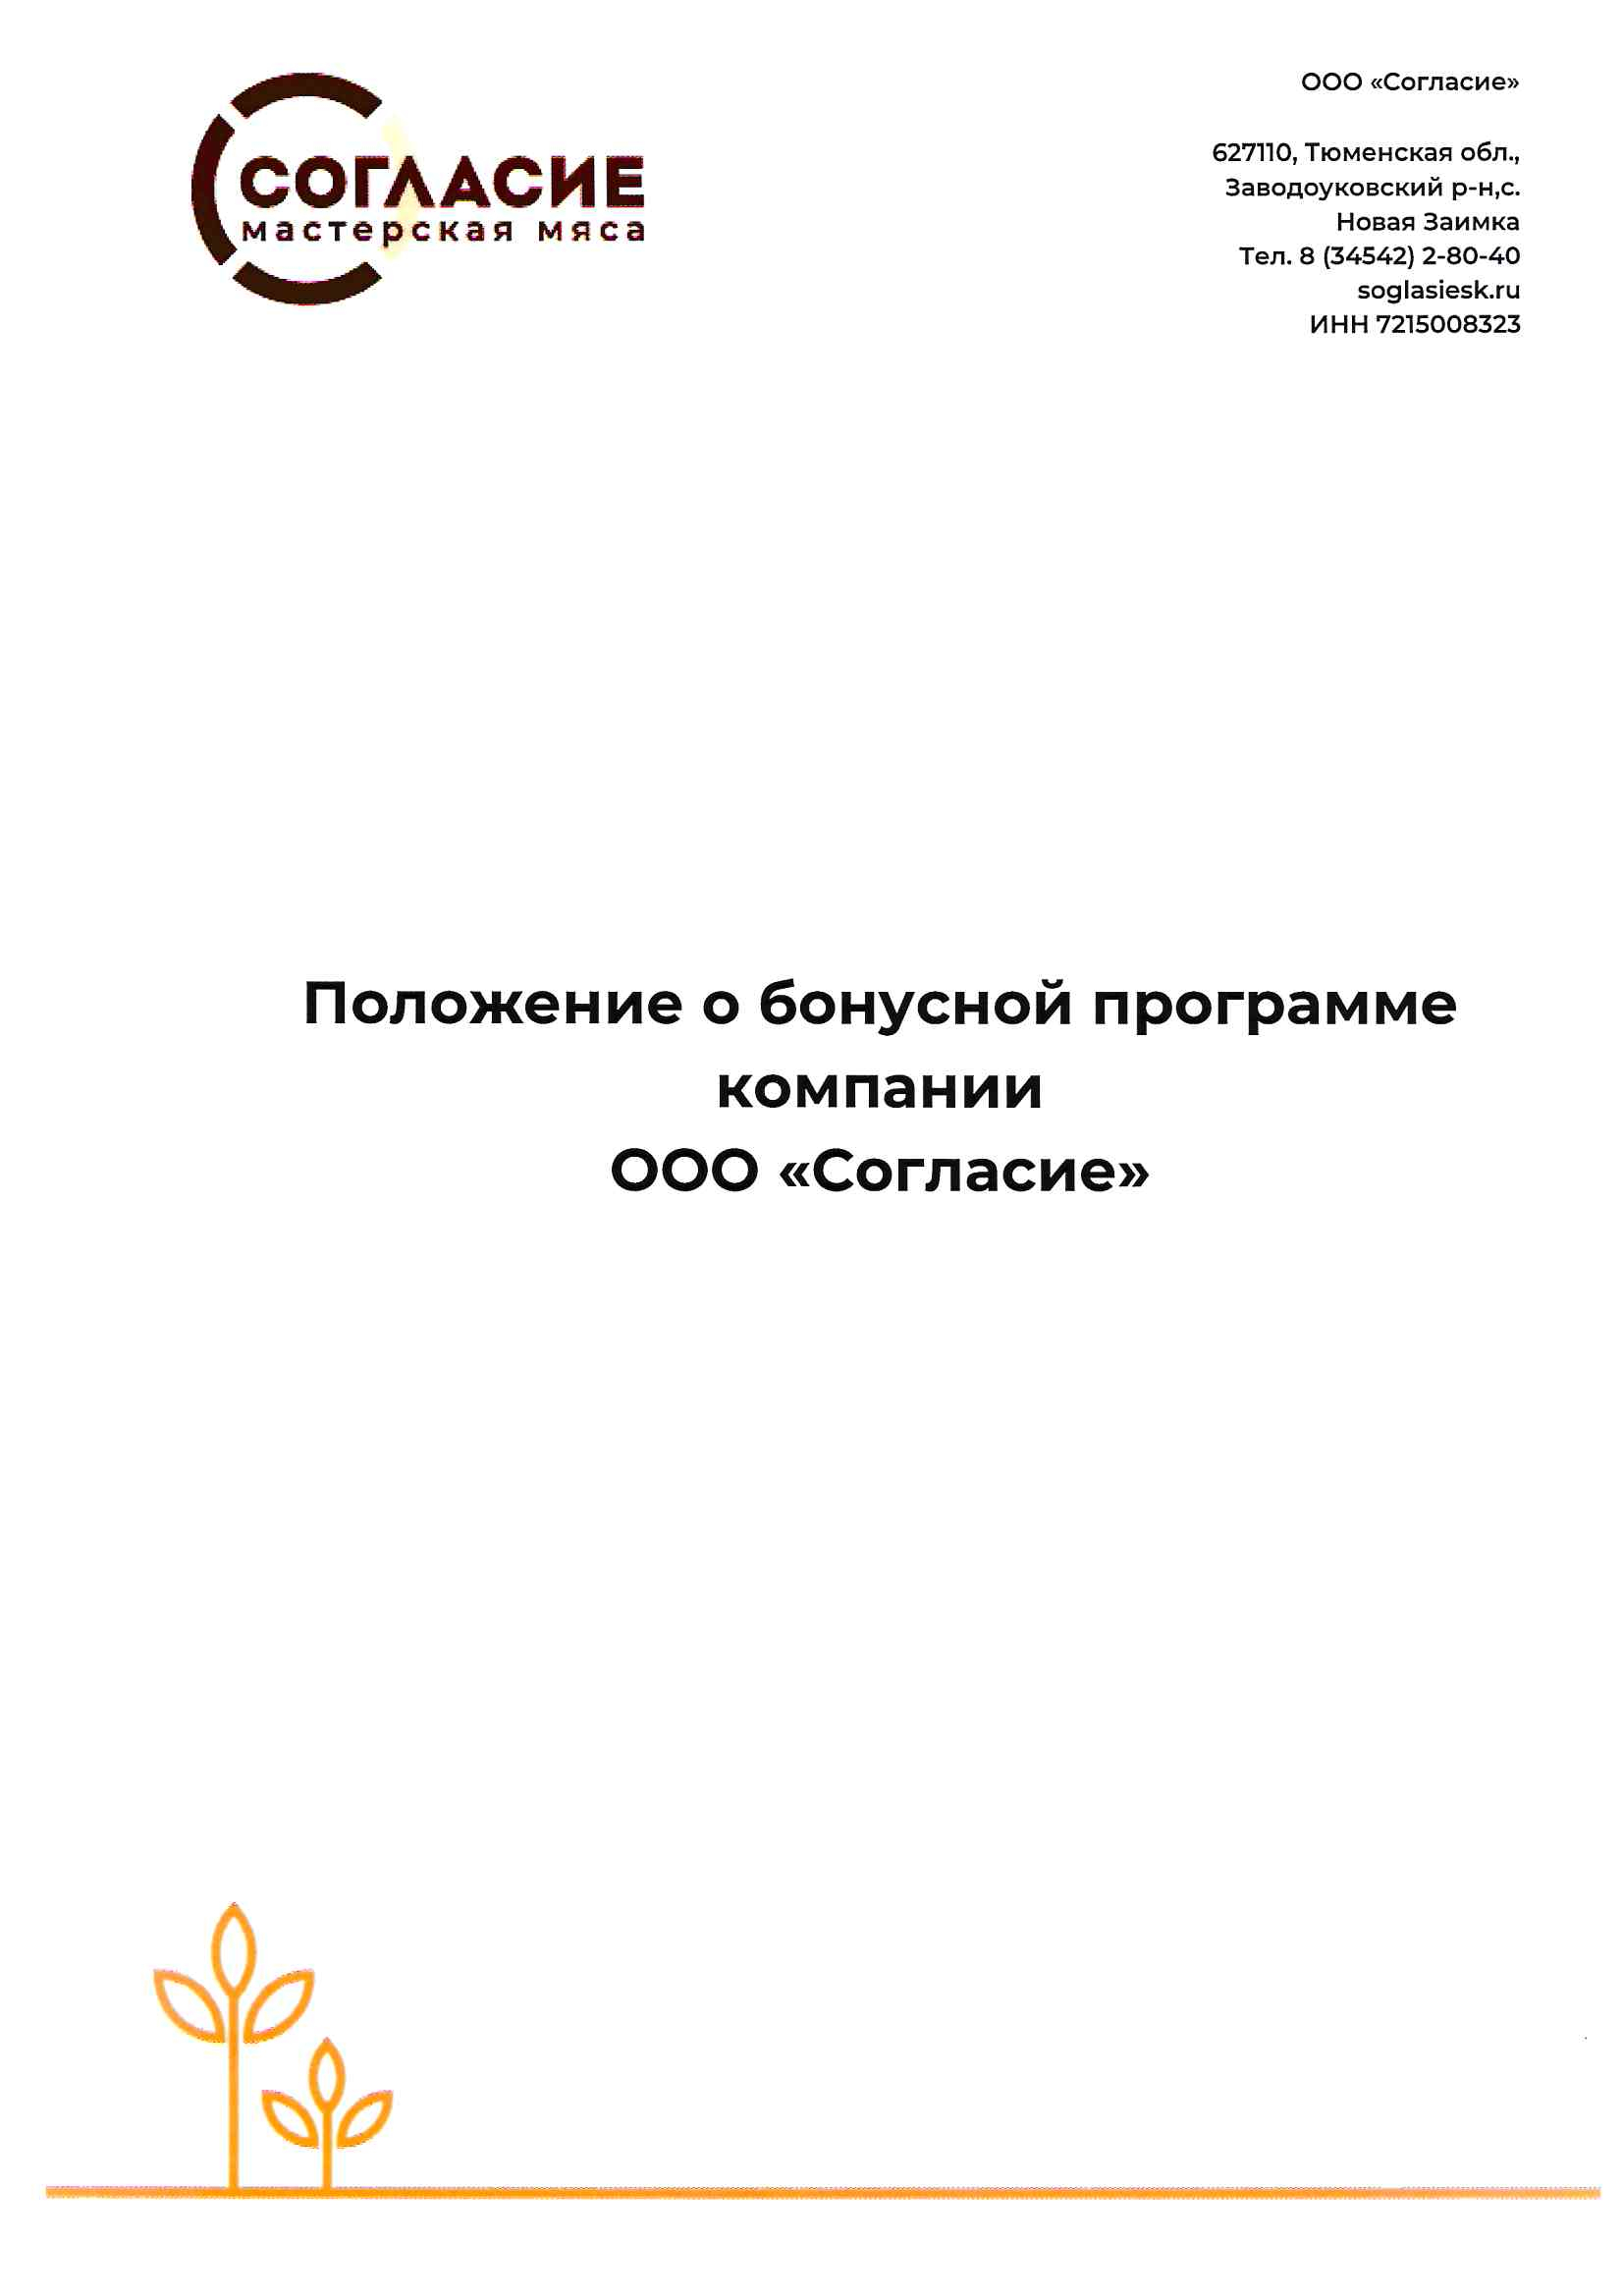 Положение о бонусной системе ООО “Согласие” (Последнее обновление от 27.06.2022).